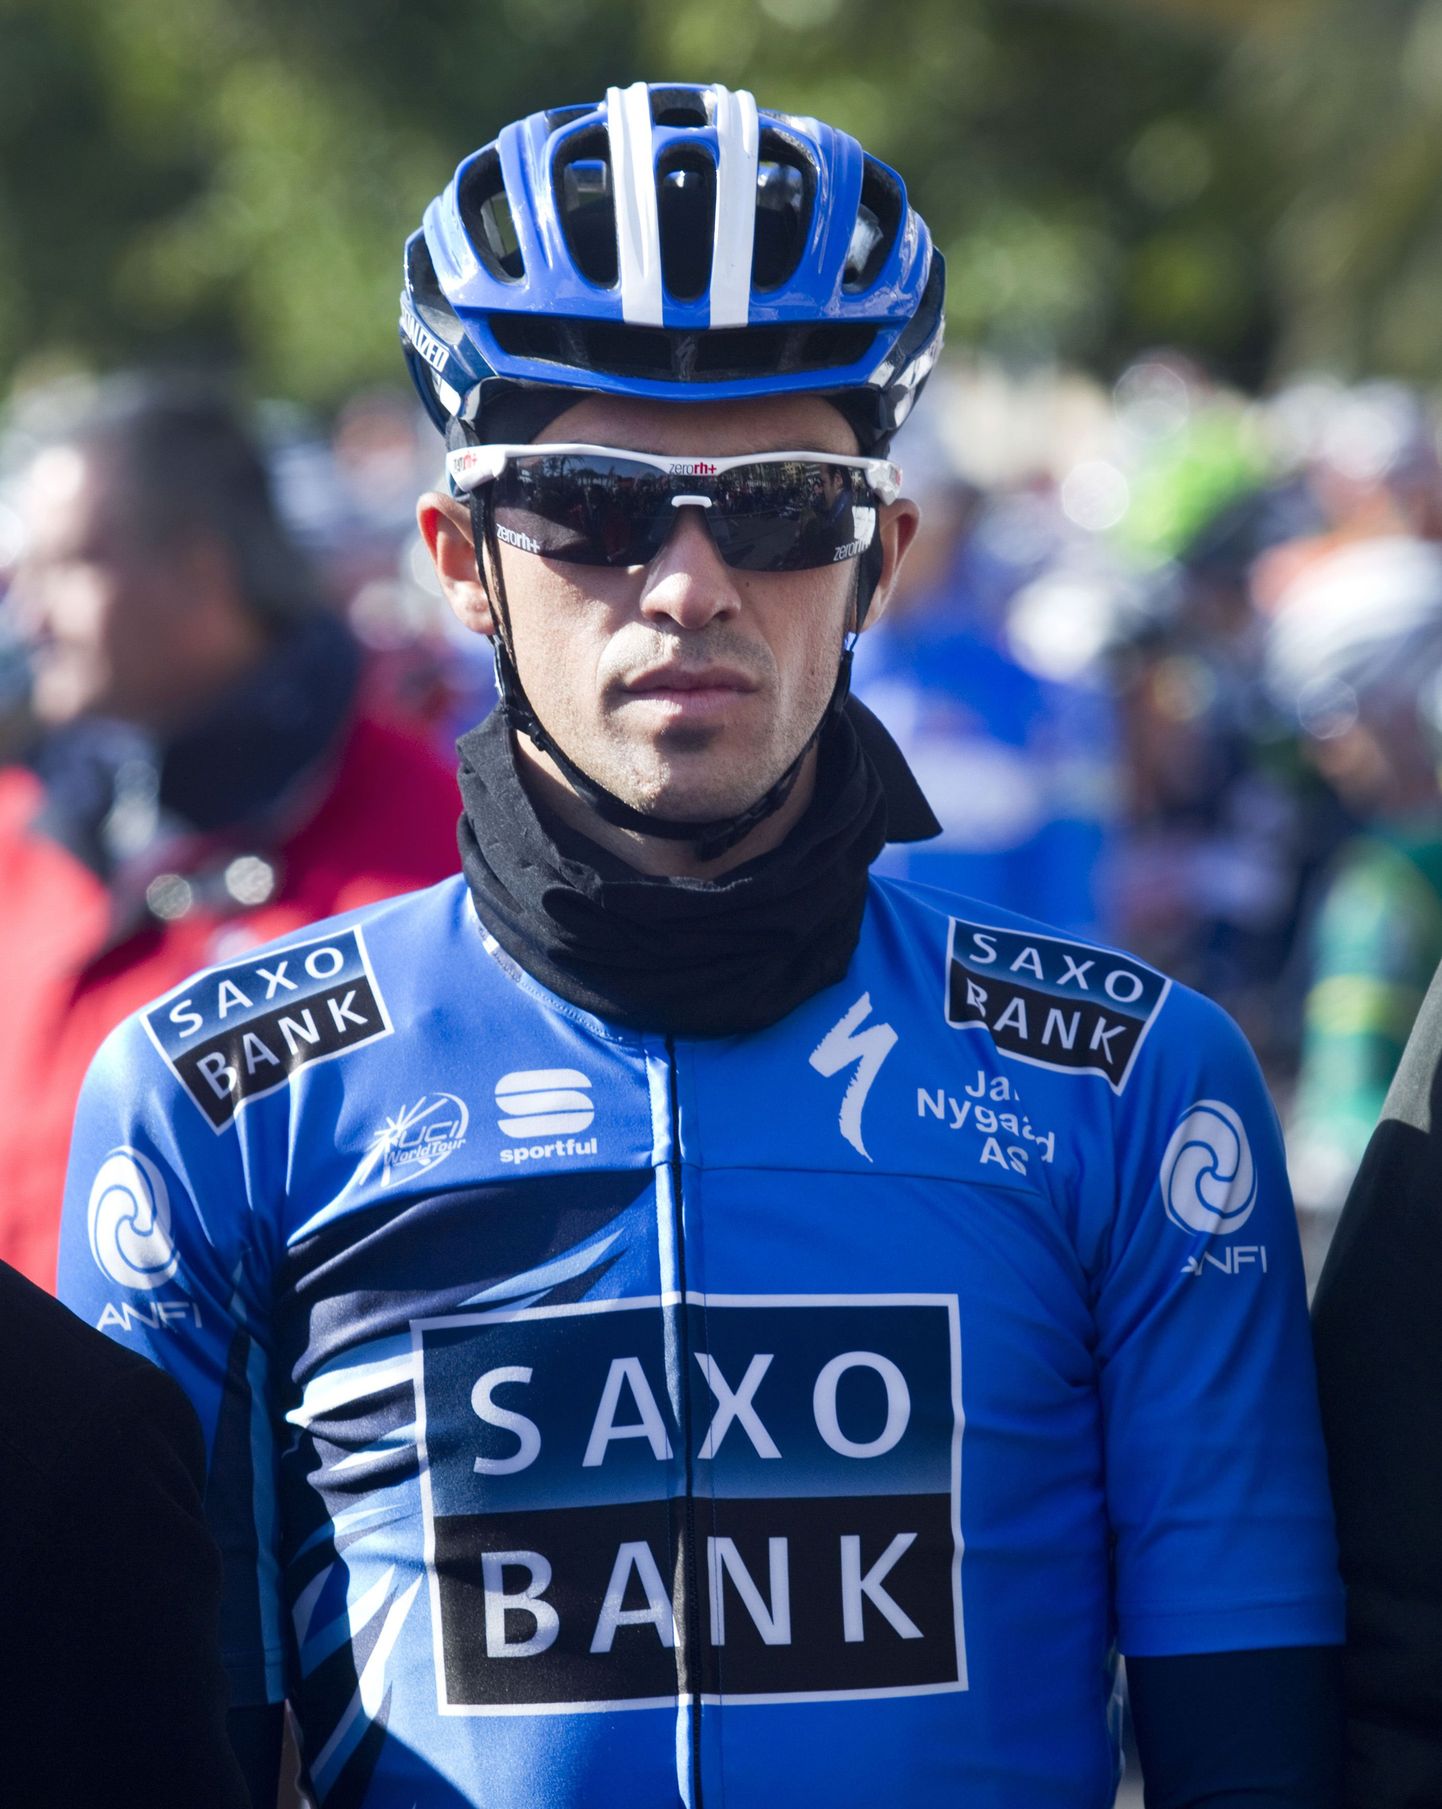 Alberto Contador Saxo Bank meeskonna vormis